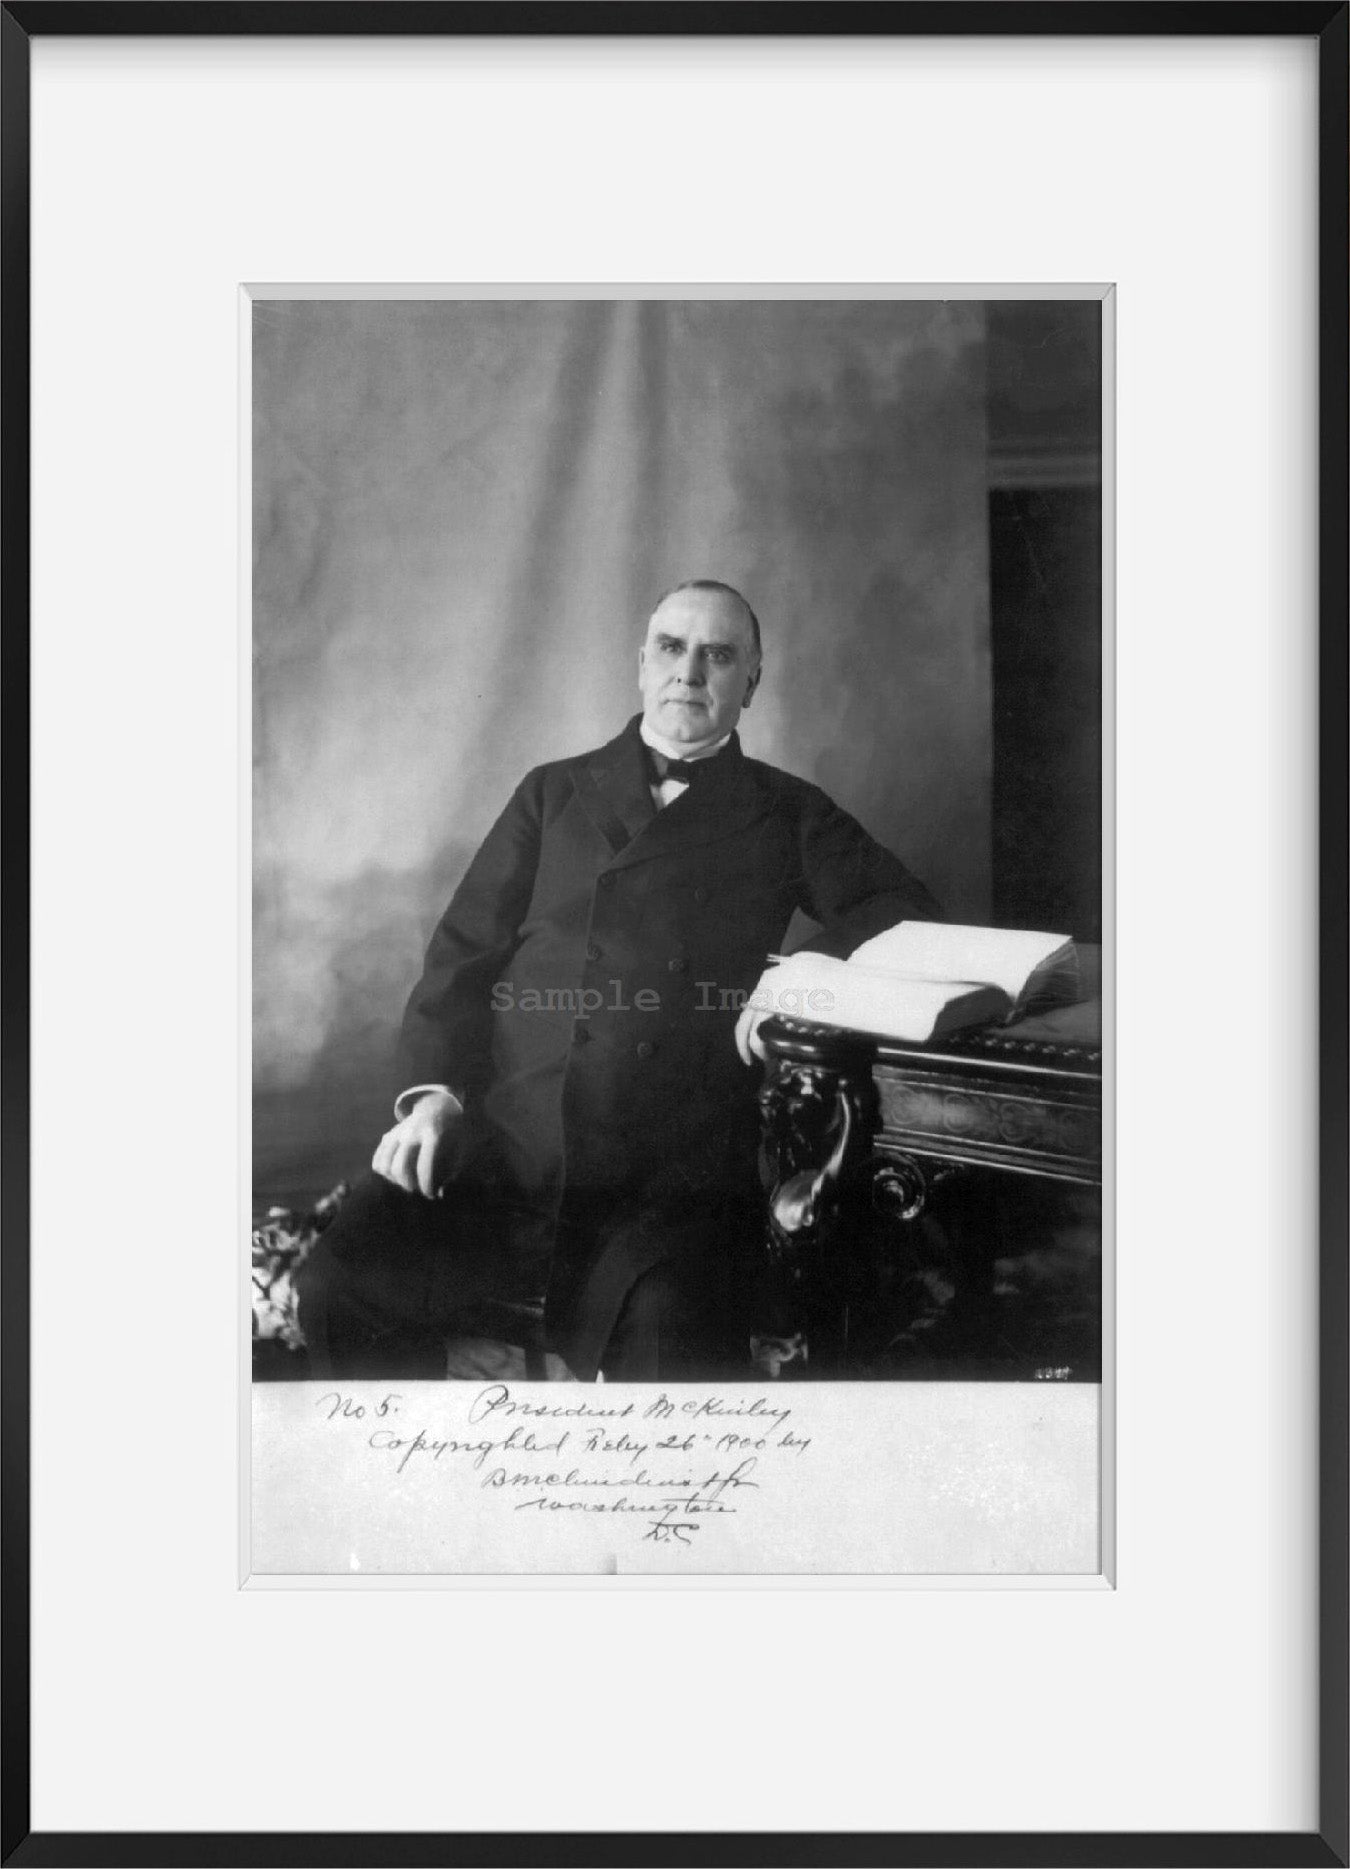 1900 photograph of Wm. McKinley